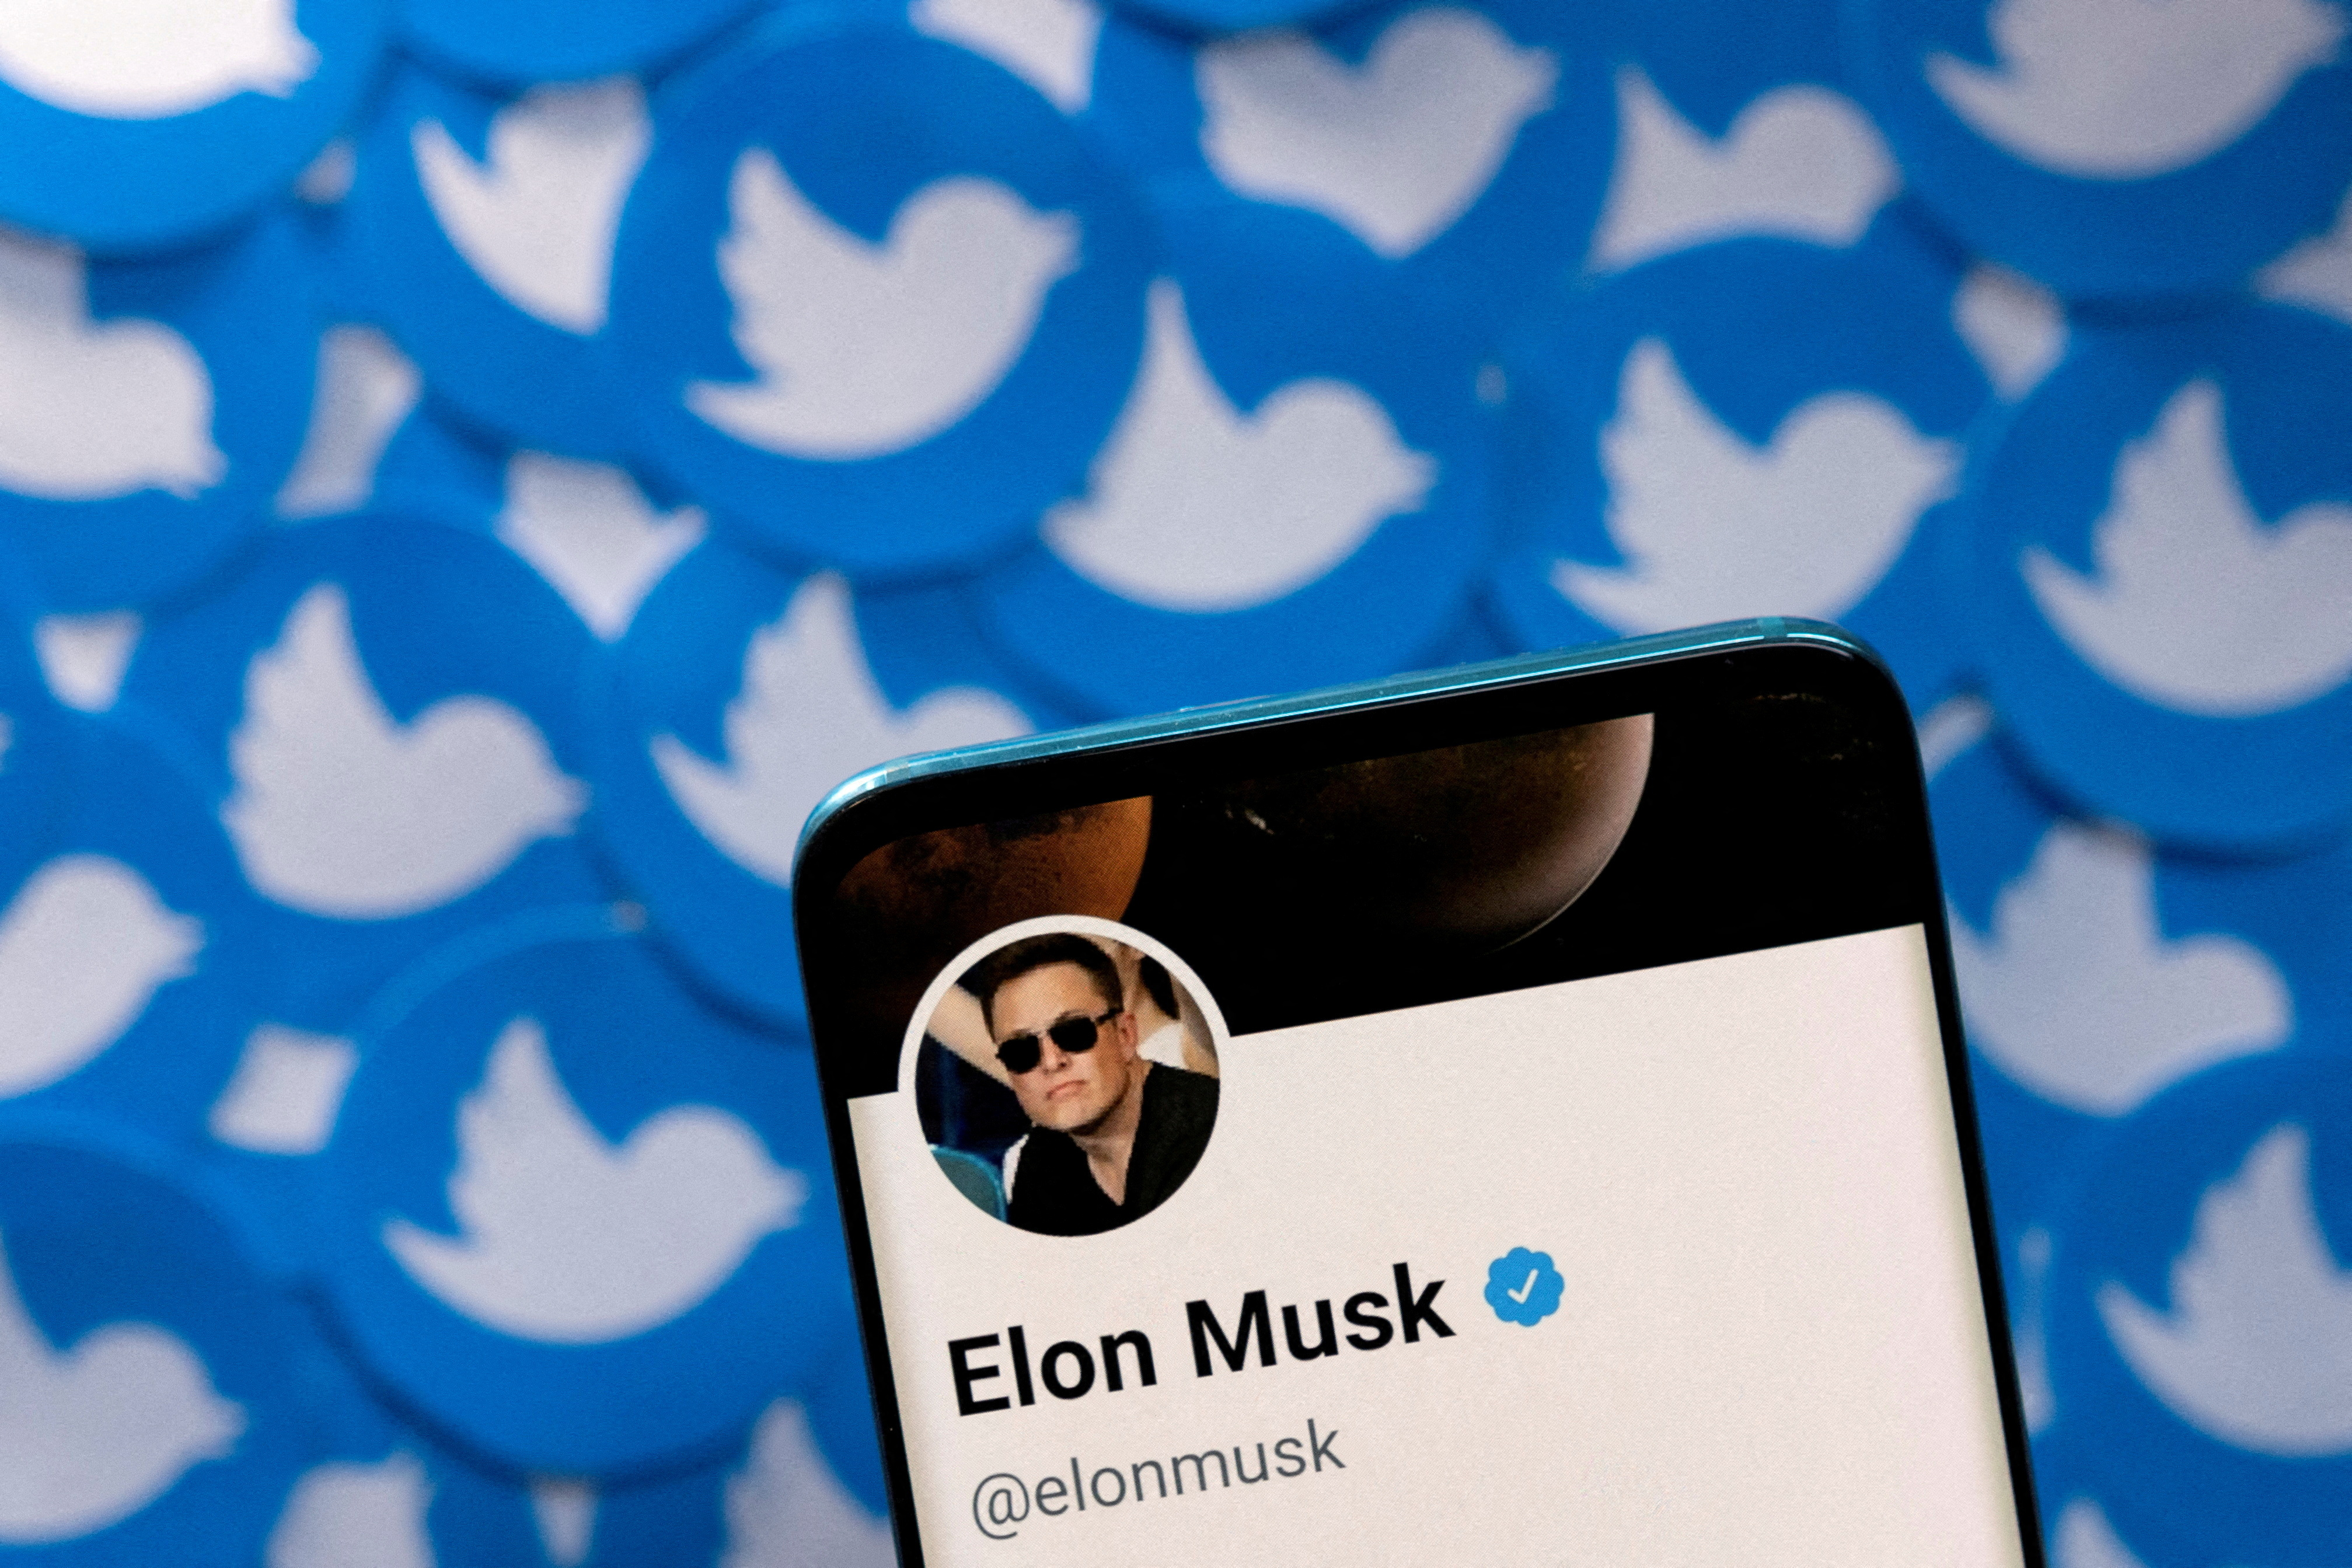 Illustrazione che mostra il profilo Twitter di Elon Musk su uno smartphone e i loghi Twitter stampati